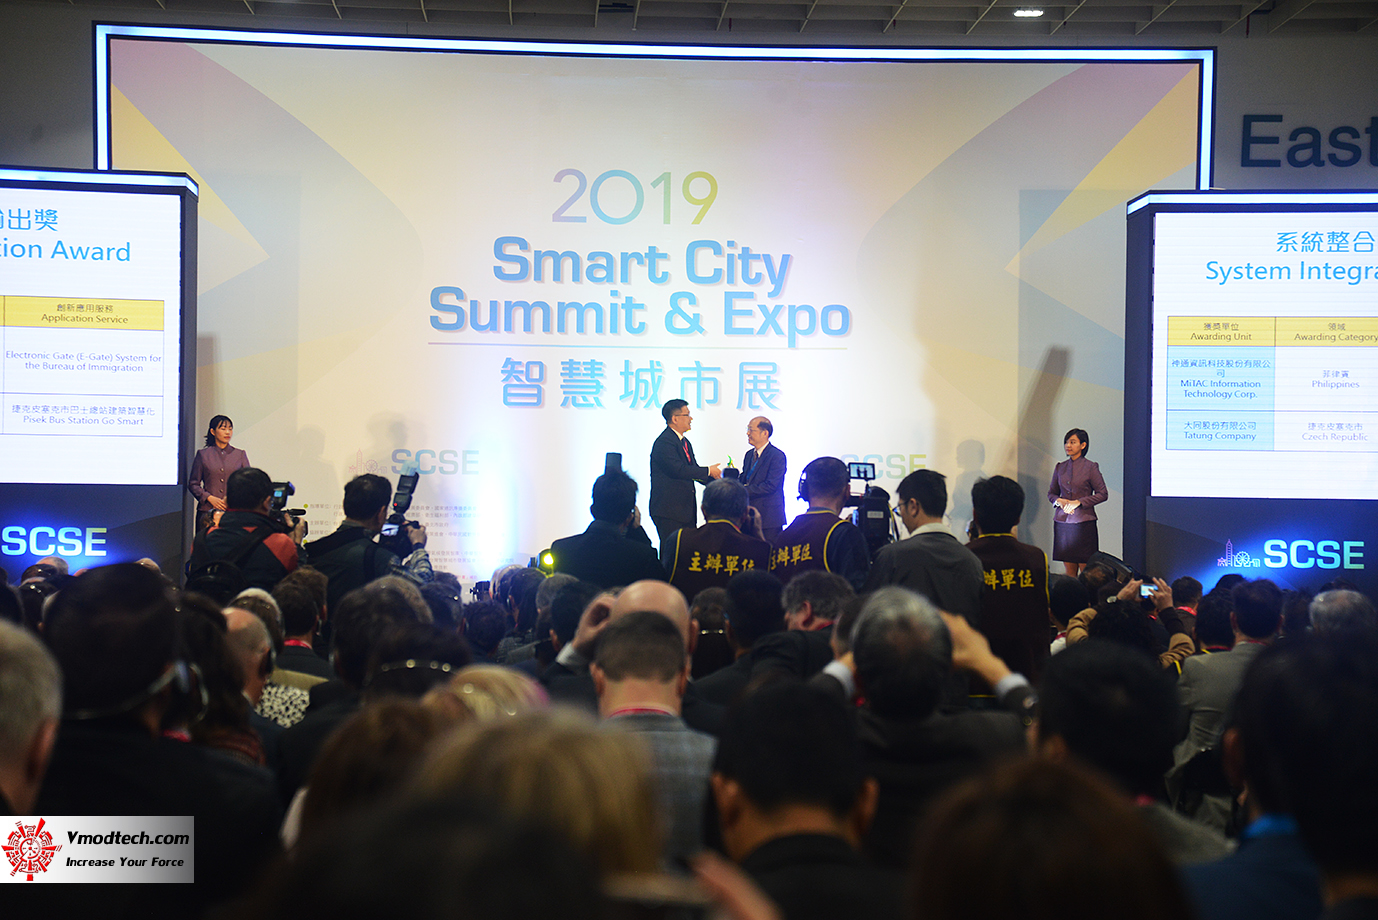 dsc 82812 เยี่ยมชมพิธีเปิด 2019 SMART CITY SUMMIT & EXPO ณ กรุงไทเป ประเทศไต้หวัน 